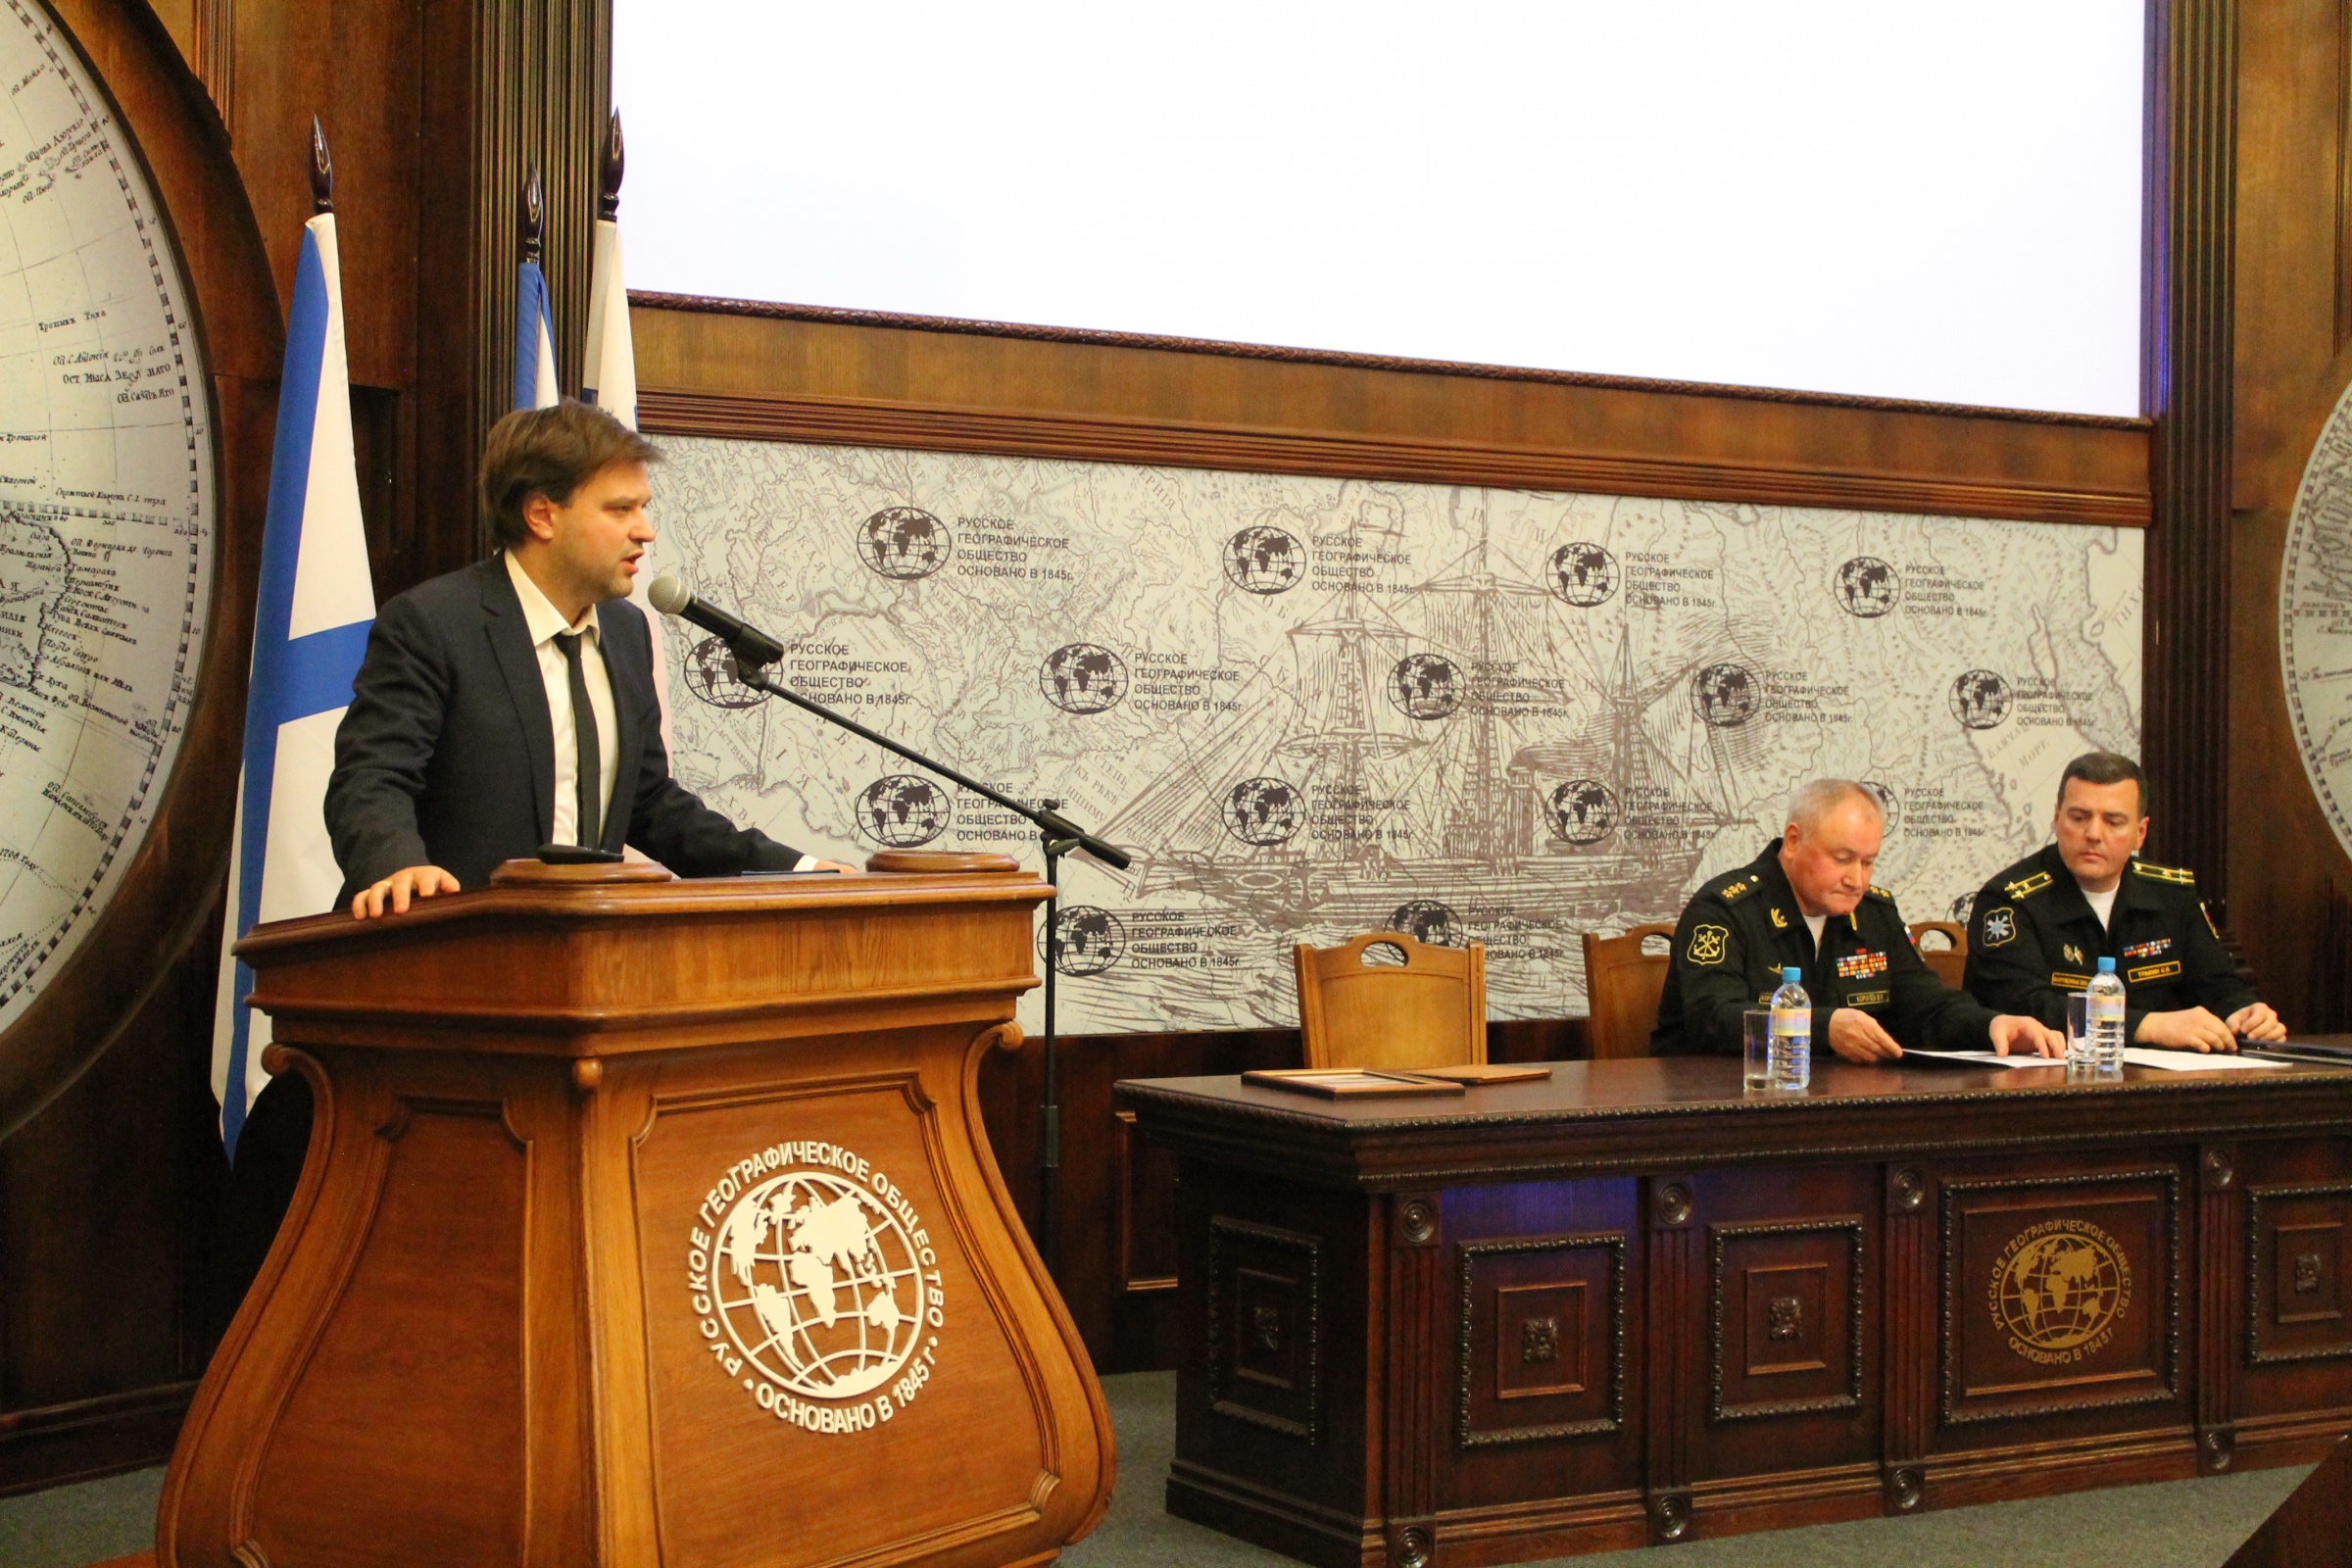 Виктор Сеничкин, директор департамента Исполнительной дирекции РГО приветствует участников мероприятия. Фото: Т. Николаева